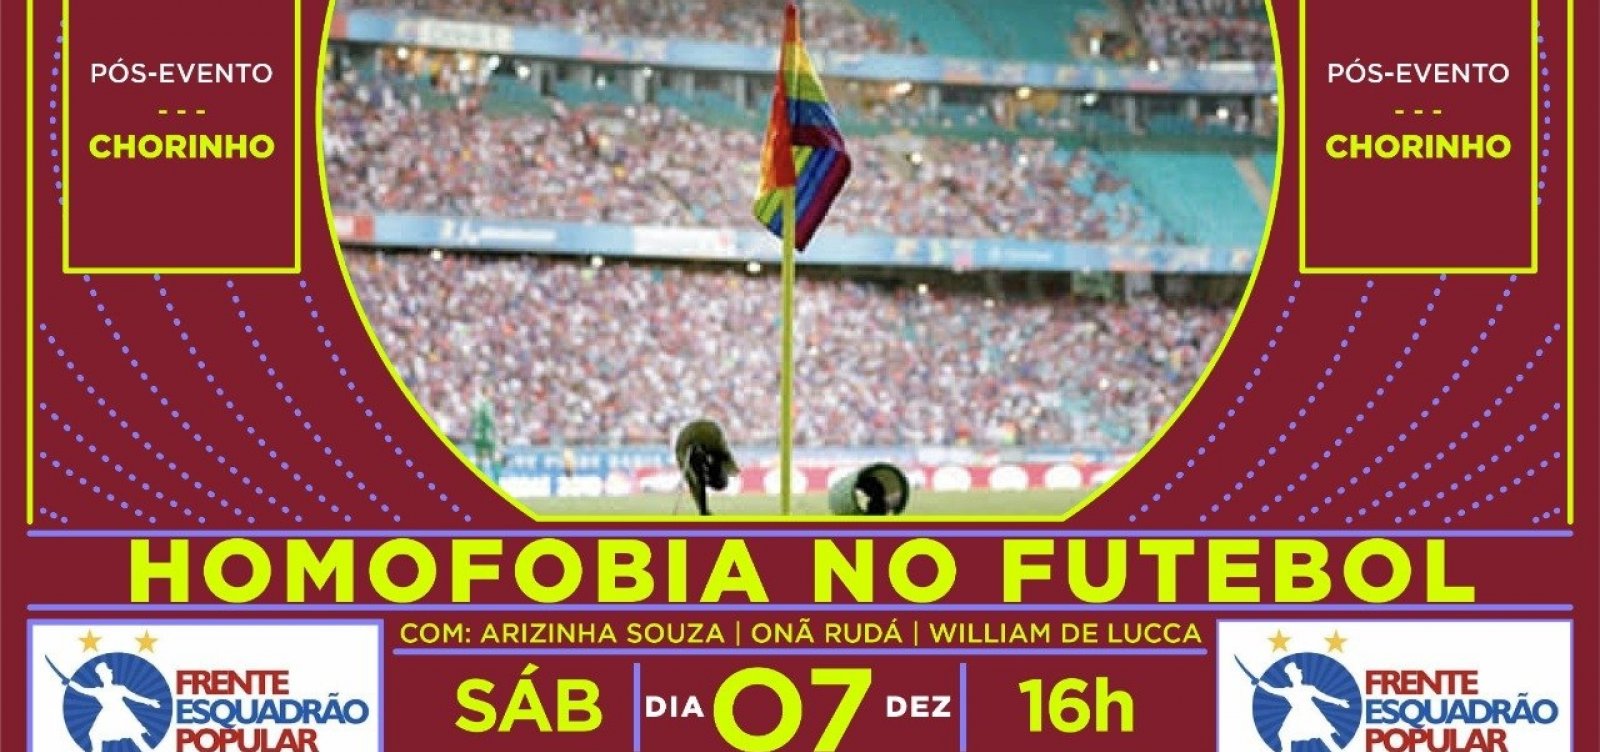 Torcida organizada do Bahia promove debate amanhã sobre homofobia no futebol